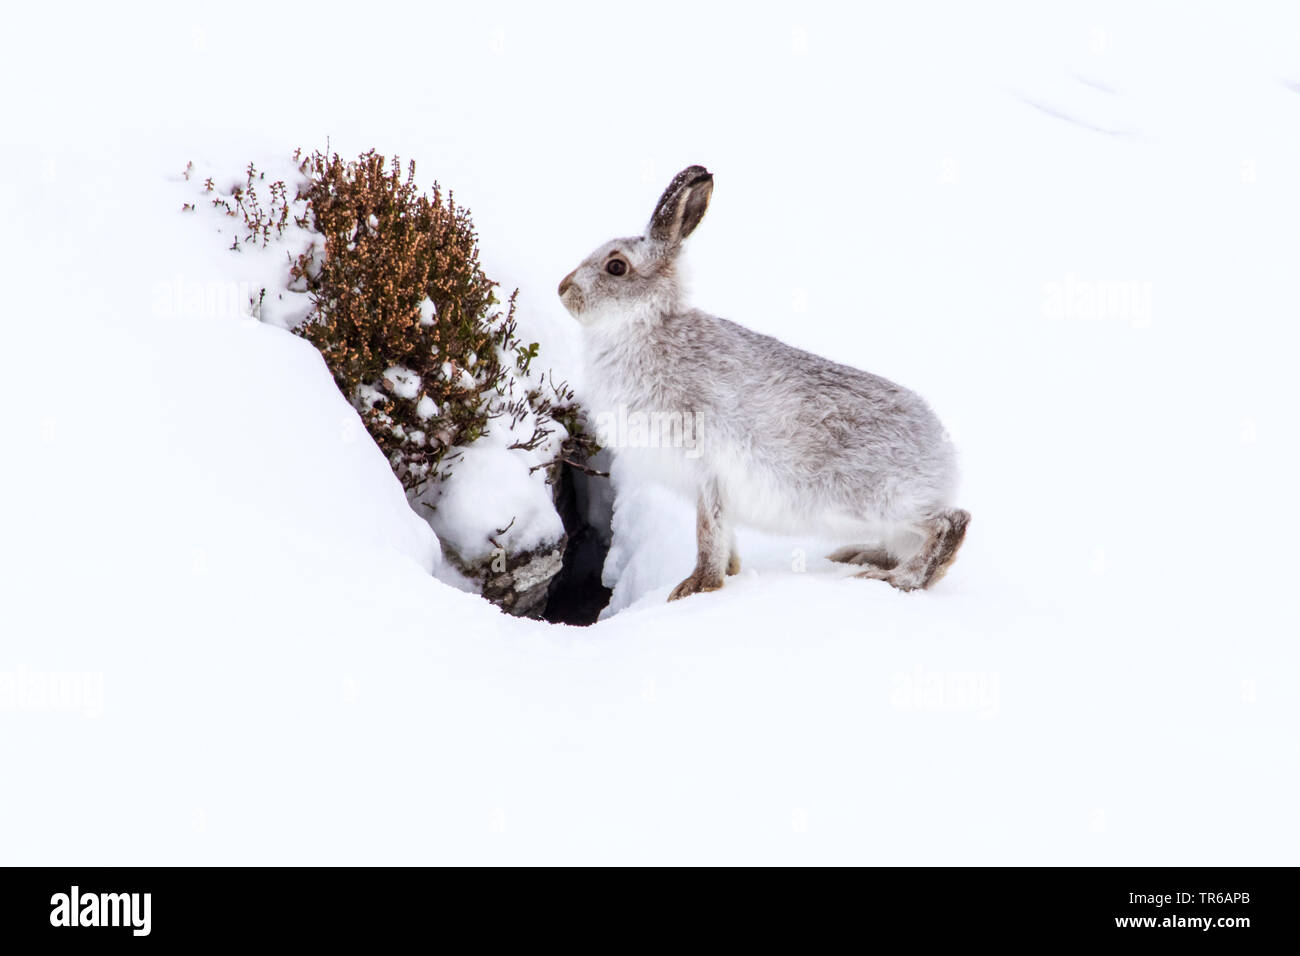 Schottische Schneehase, Schneehase, weissen Hasen, eurasischen Arktis Hase (Lepus timidus scotticus, Lepus scotticus), sitzt vor der Höhle im Winter, Vereinigtes Königreich, Schottland, Aviemore Stockfoto